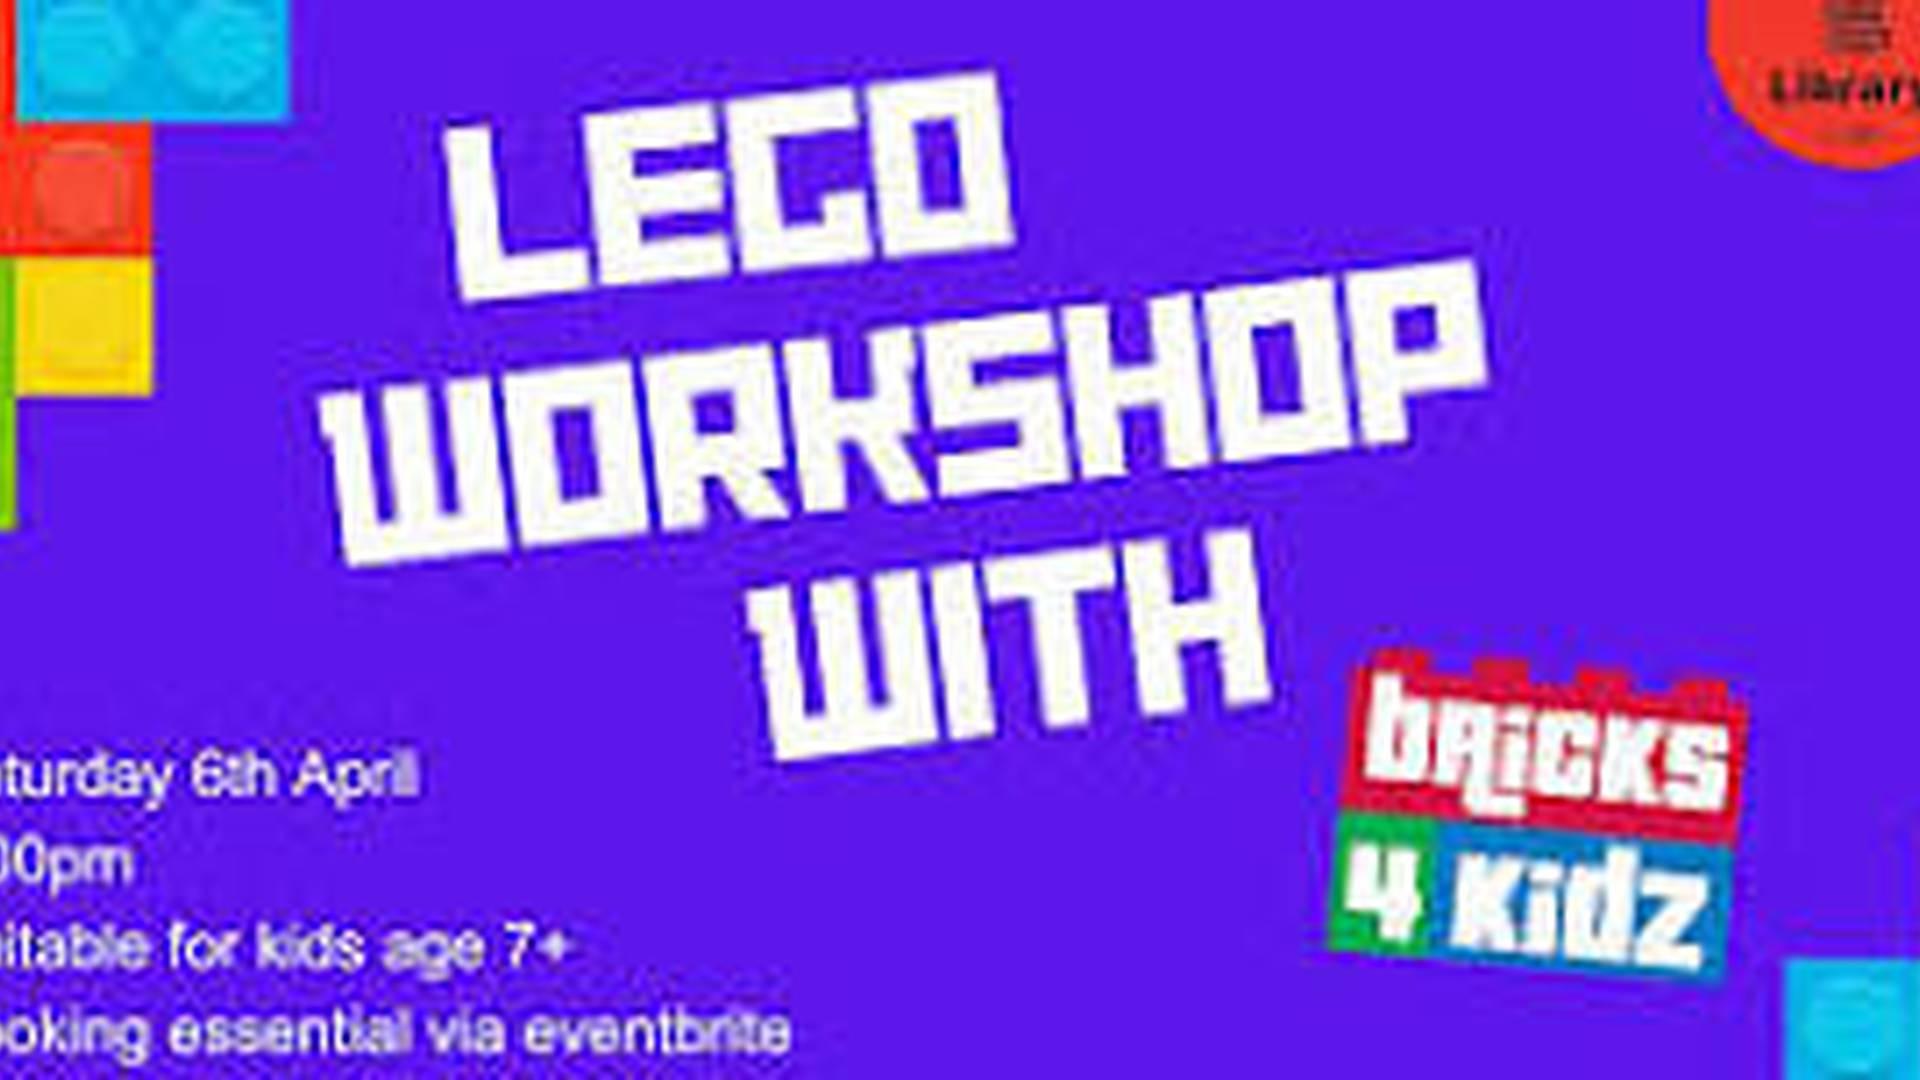 Lego workshop with Bricks4Kidz (Age 7+) photo